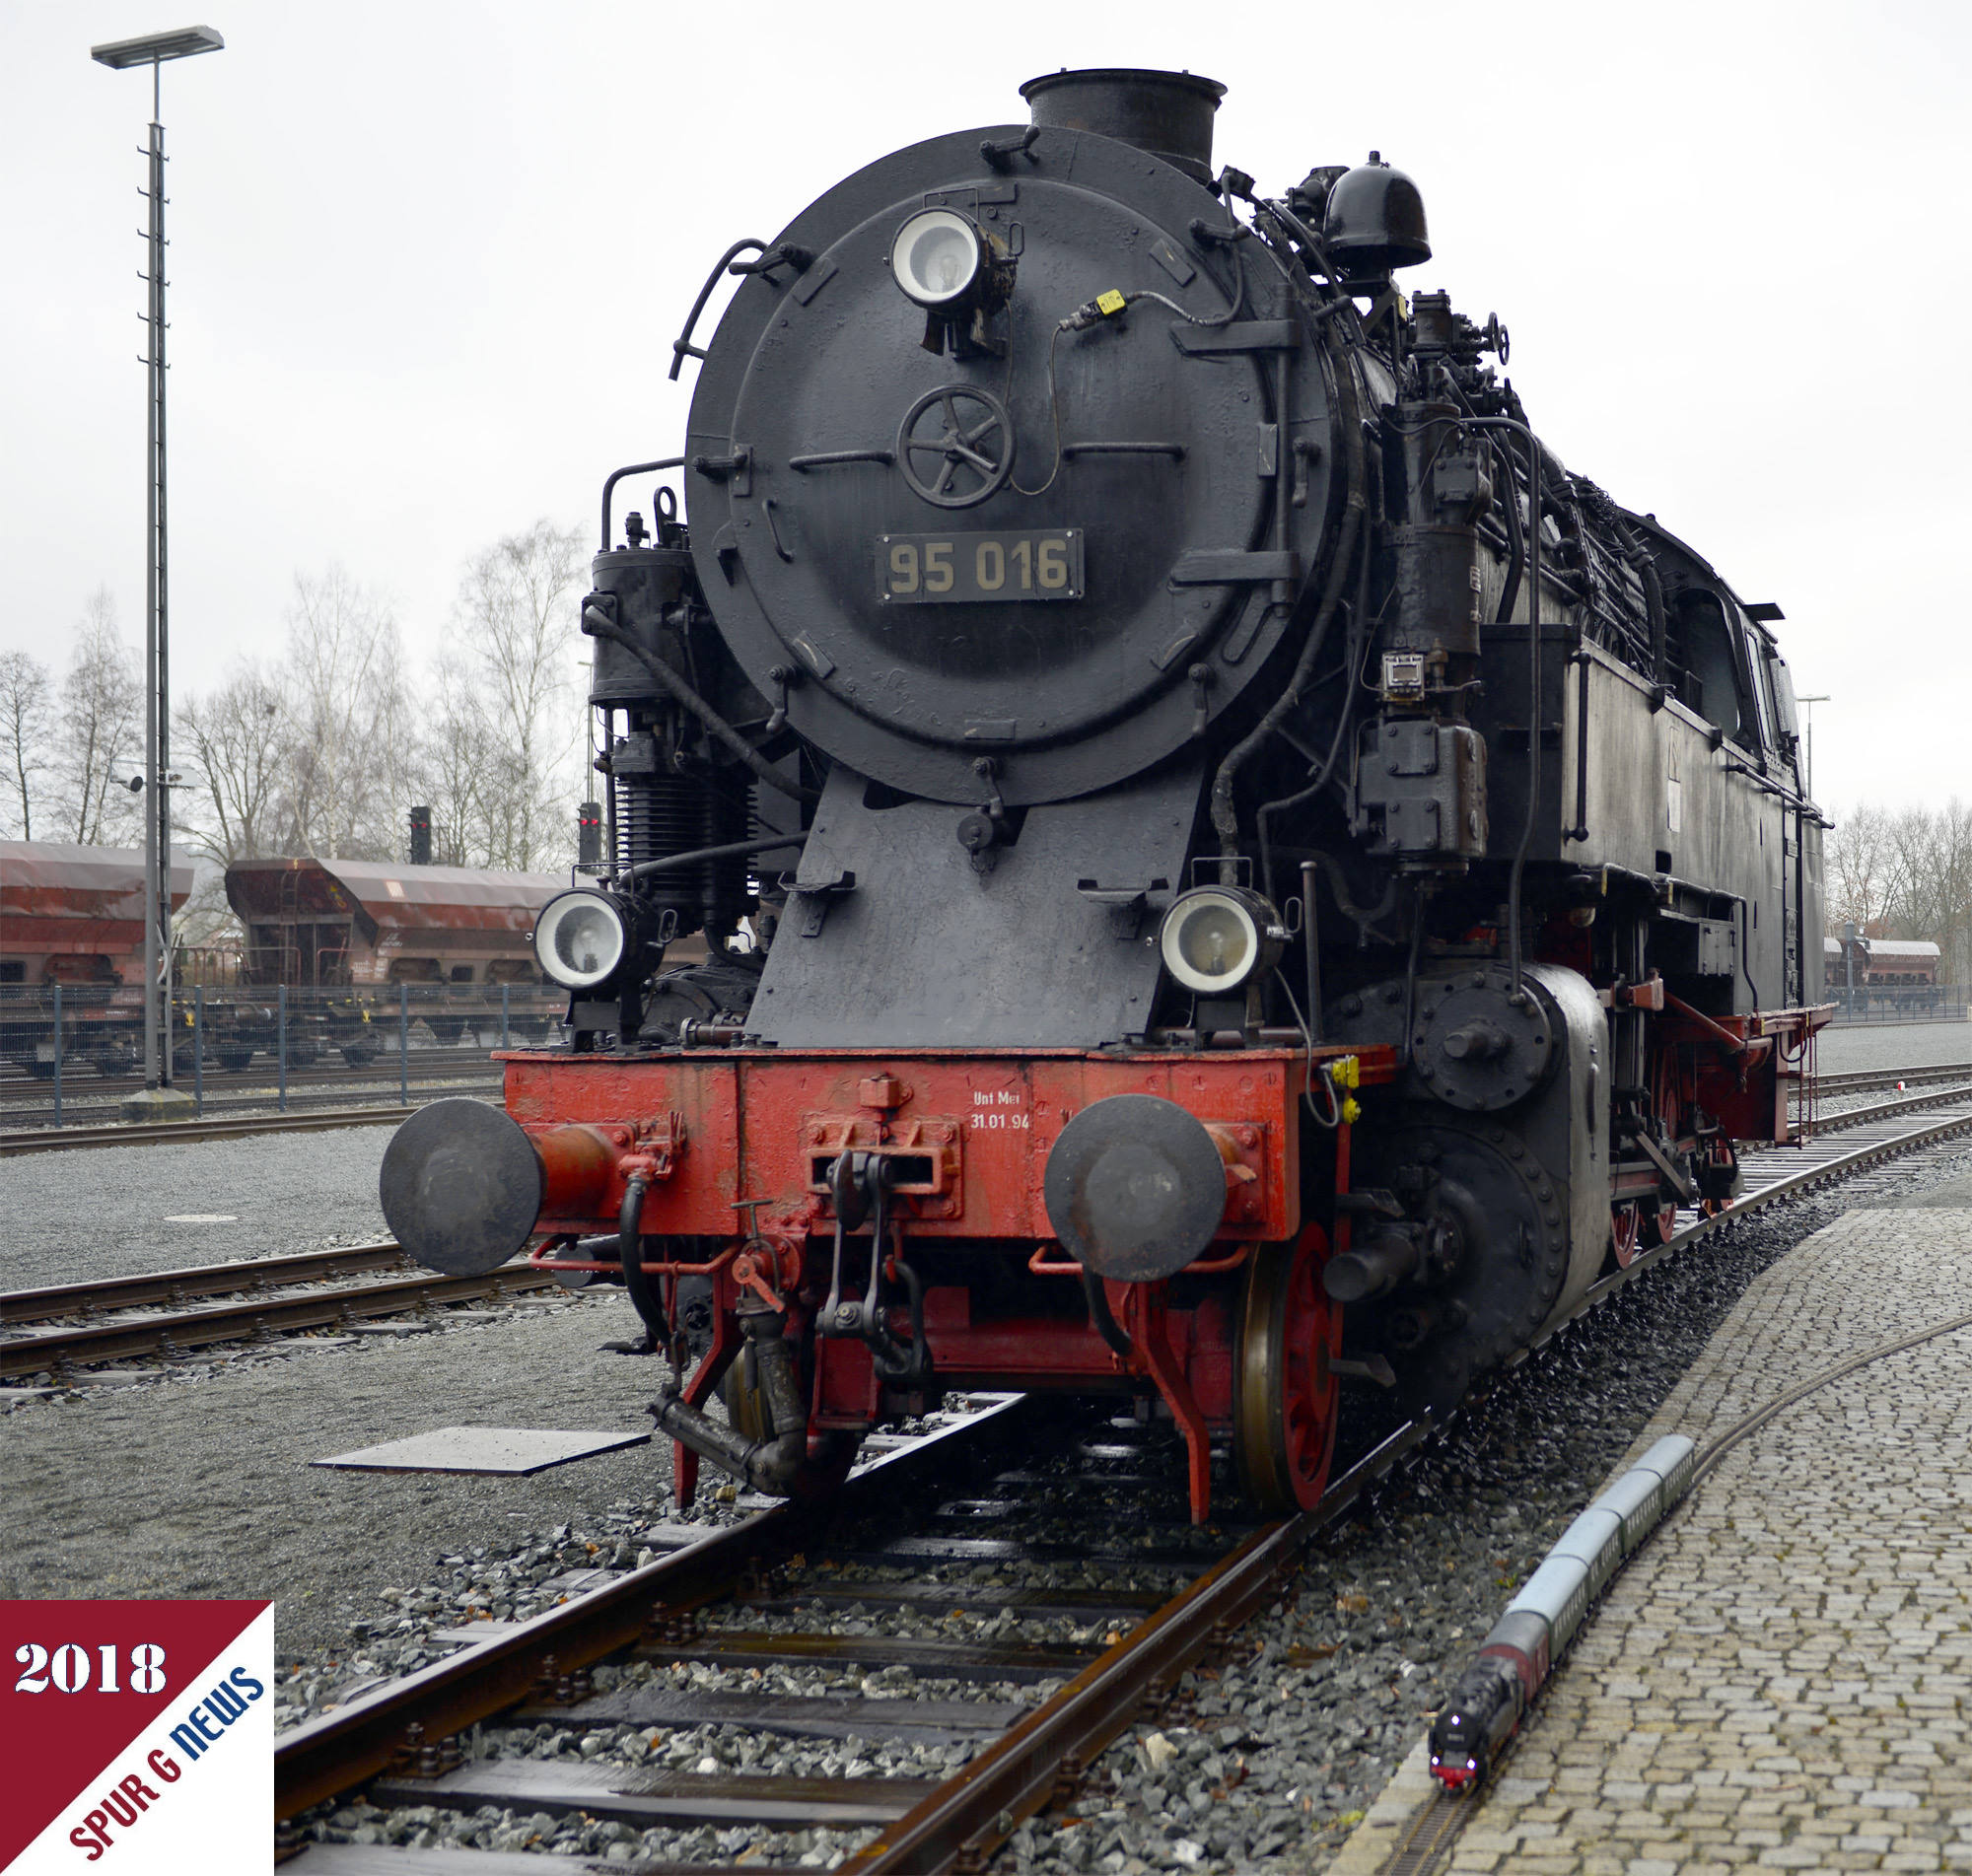 Originallokomotive BR 95 016 und Gartenbahnlokomotive BR 95 1027-2 von PIKO mit stilgerechtem Gter- und Personenzug auf den Gartenbahngleisen. 